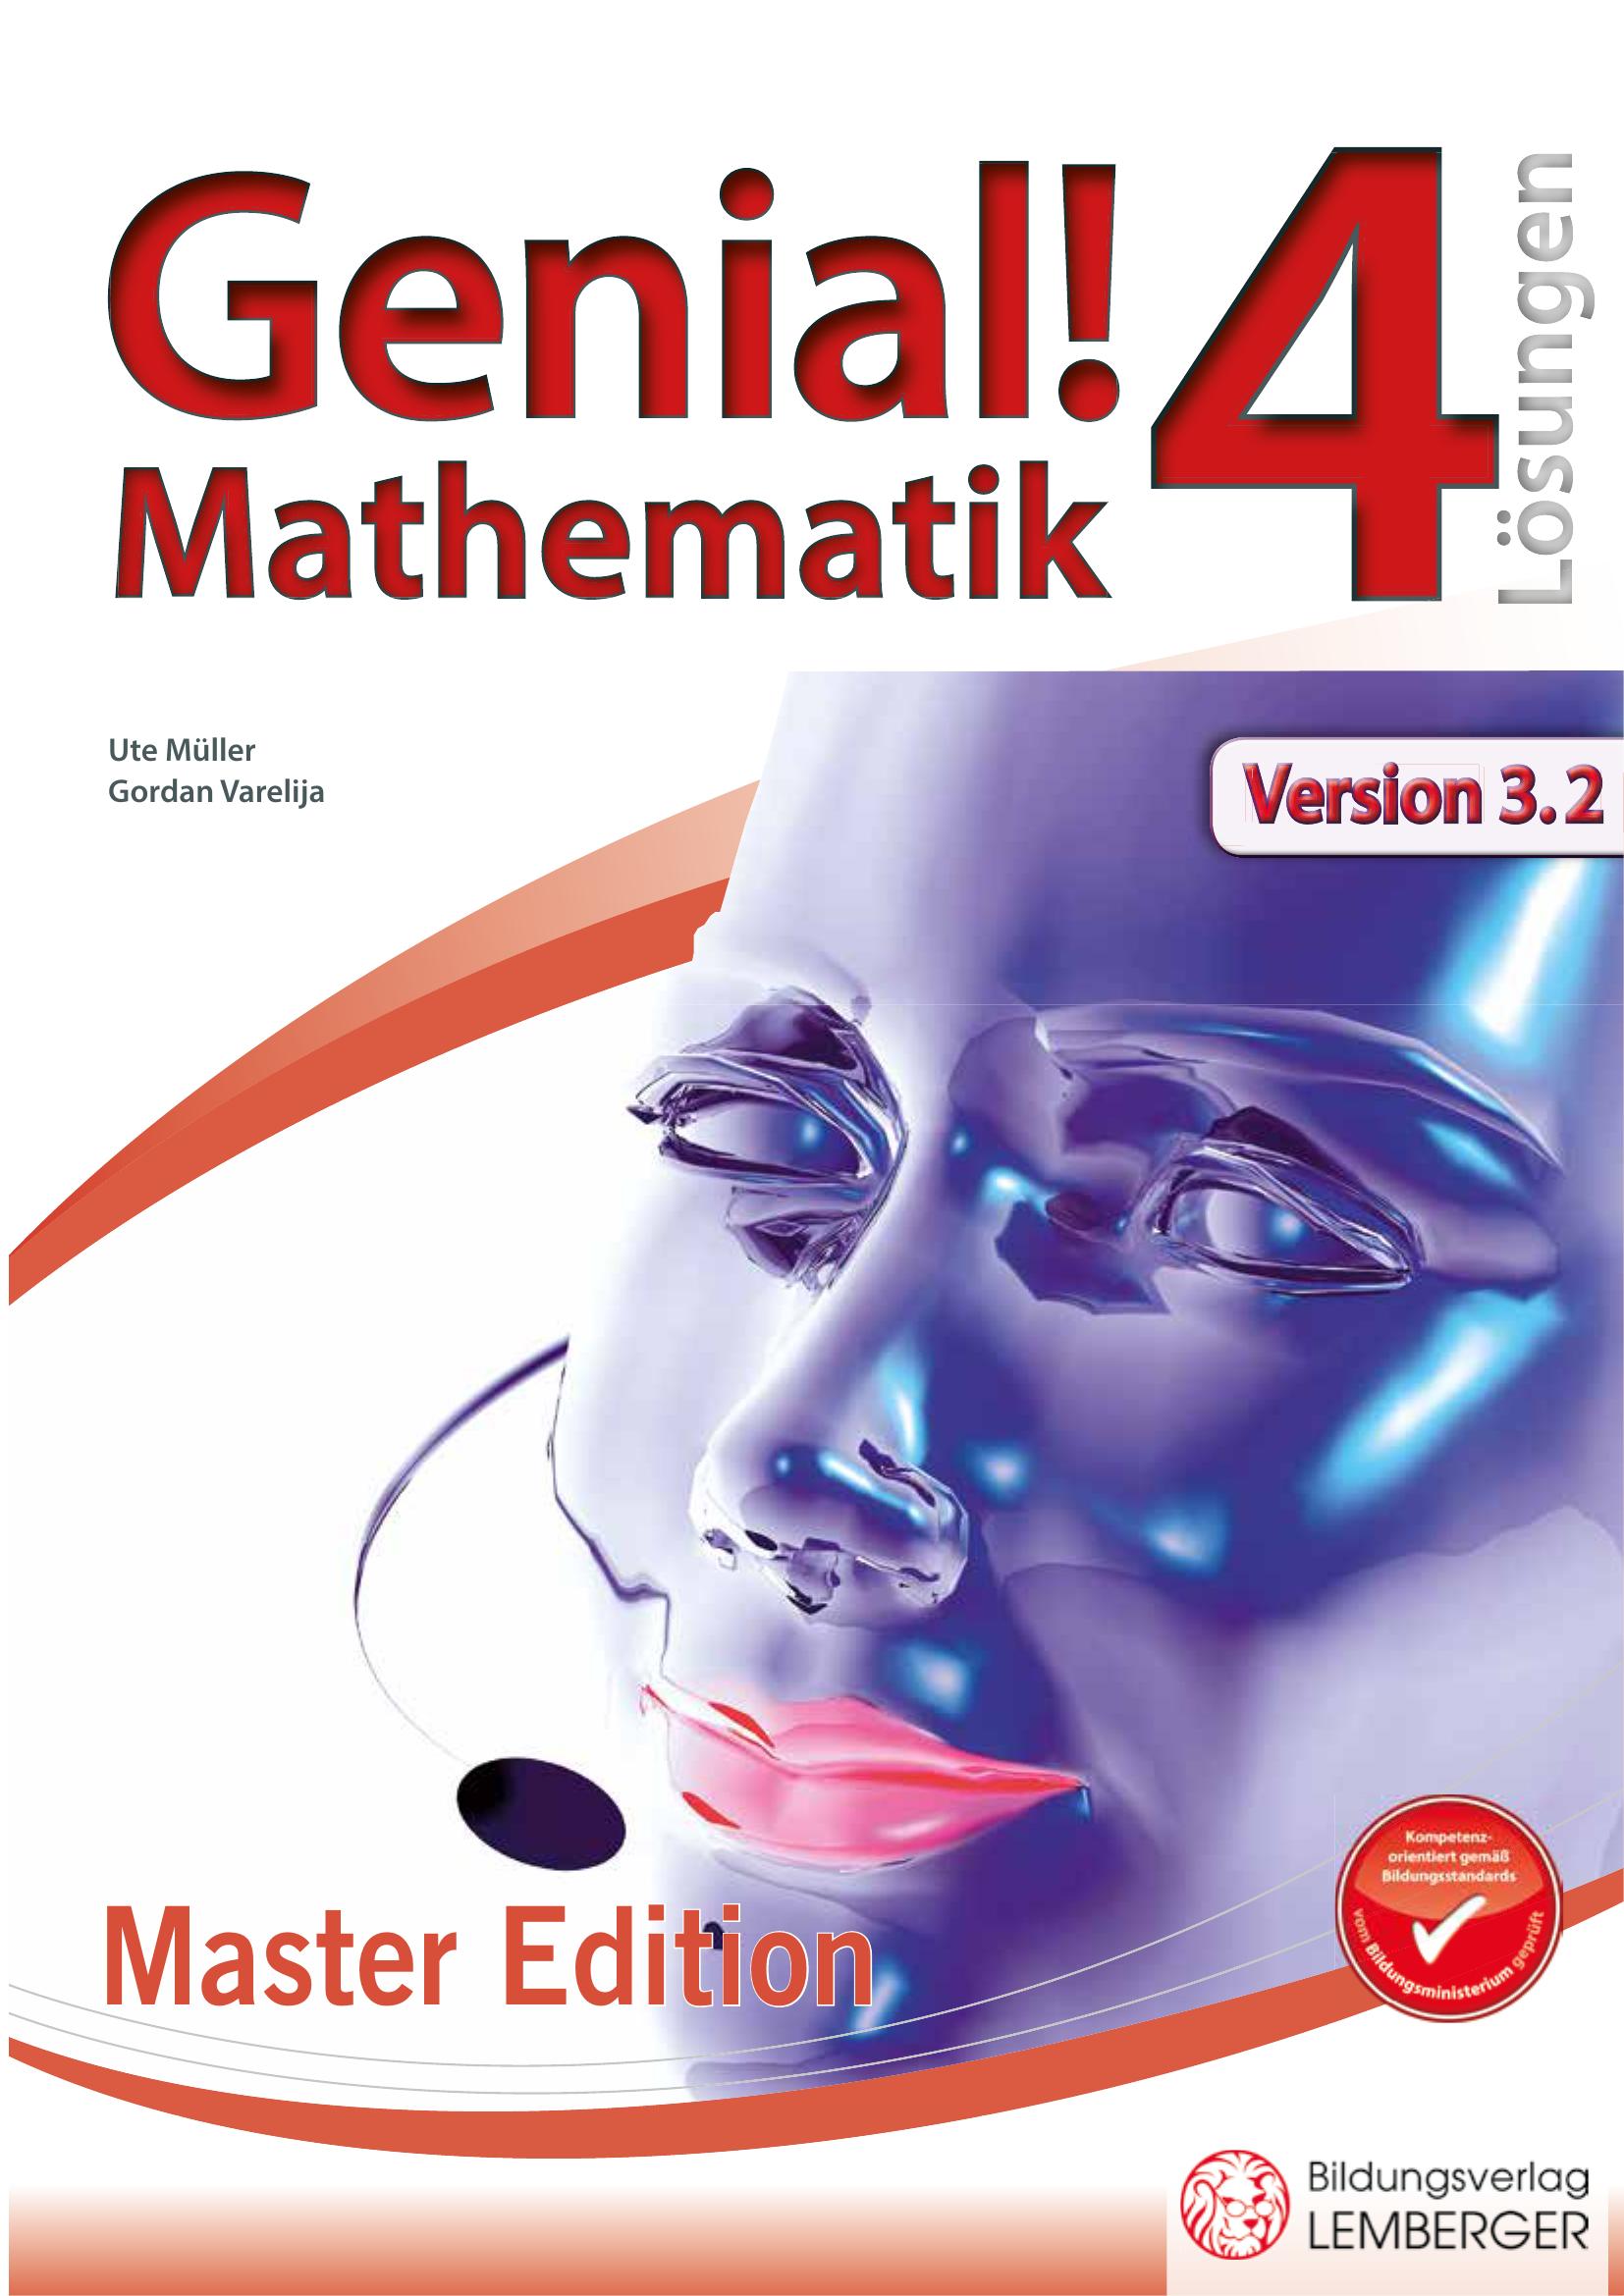 Genial! Mathematik 4 IKT – Übungsteil Master Edition v3.2 – Lösungen